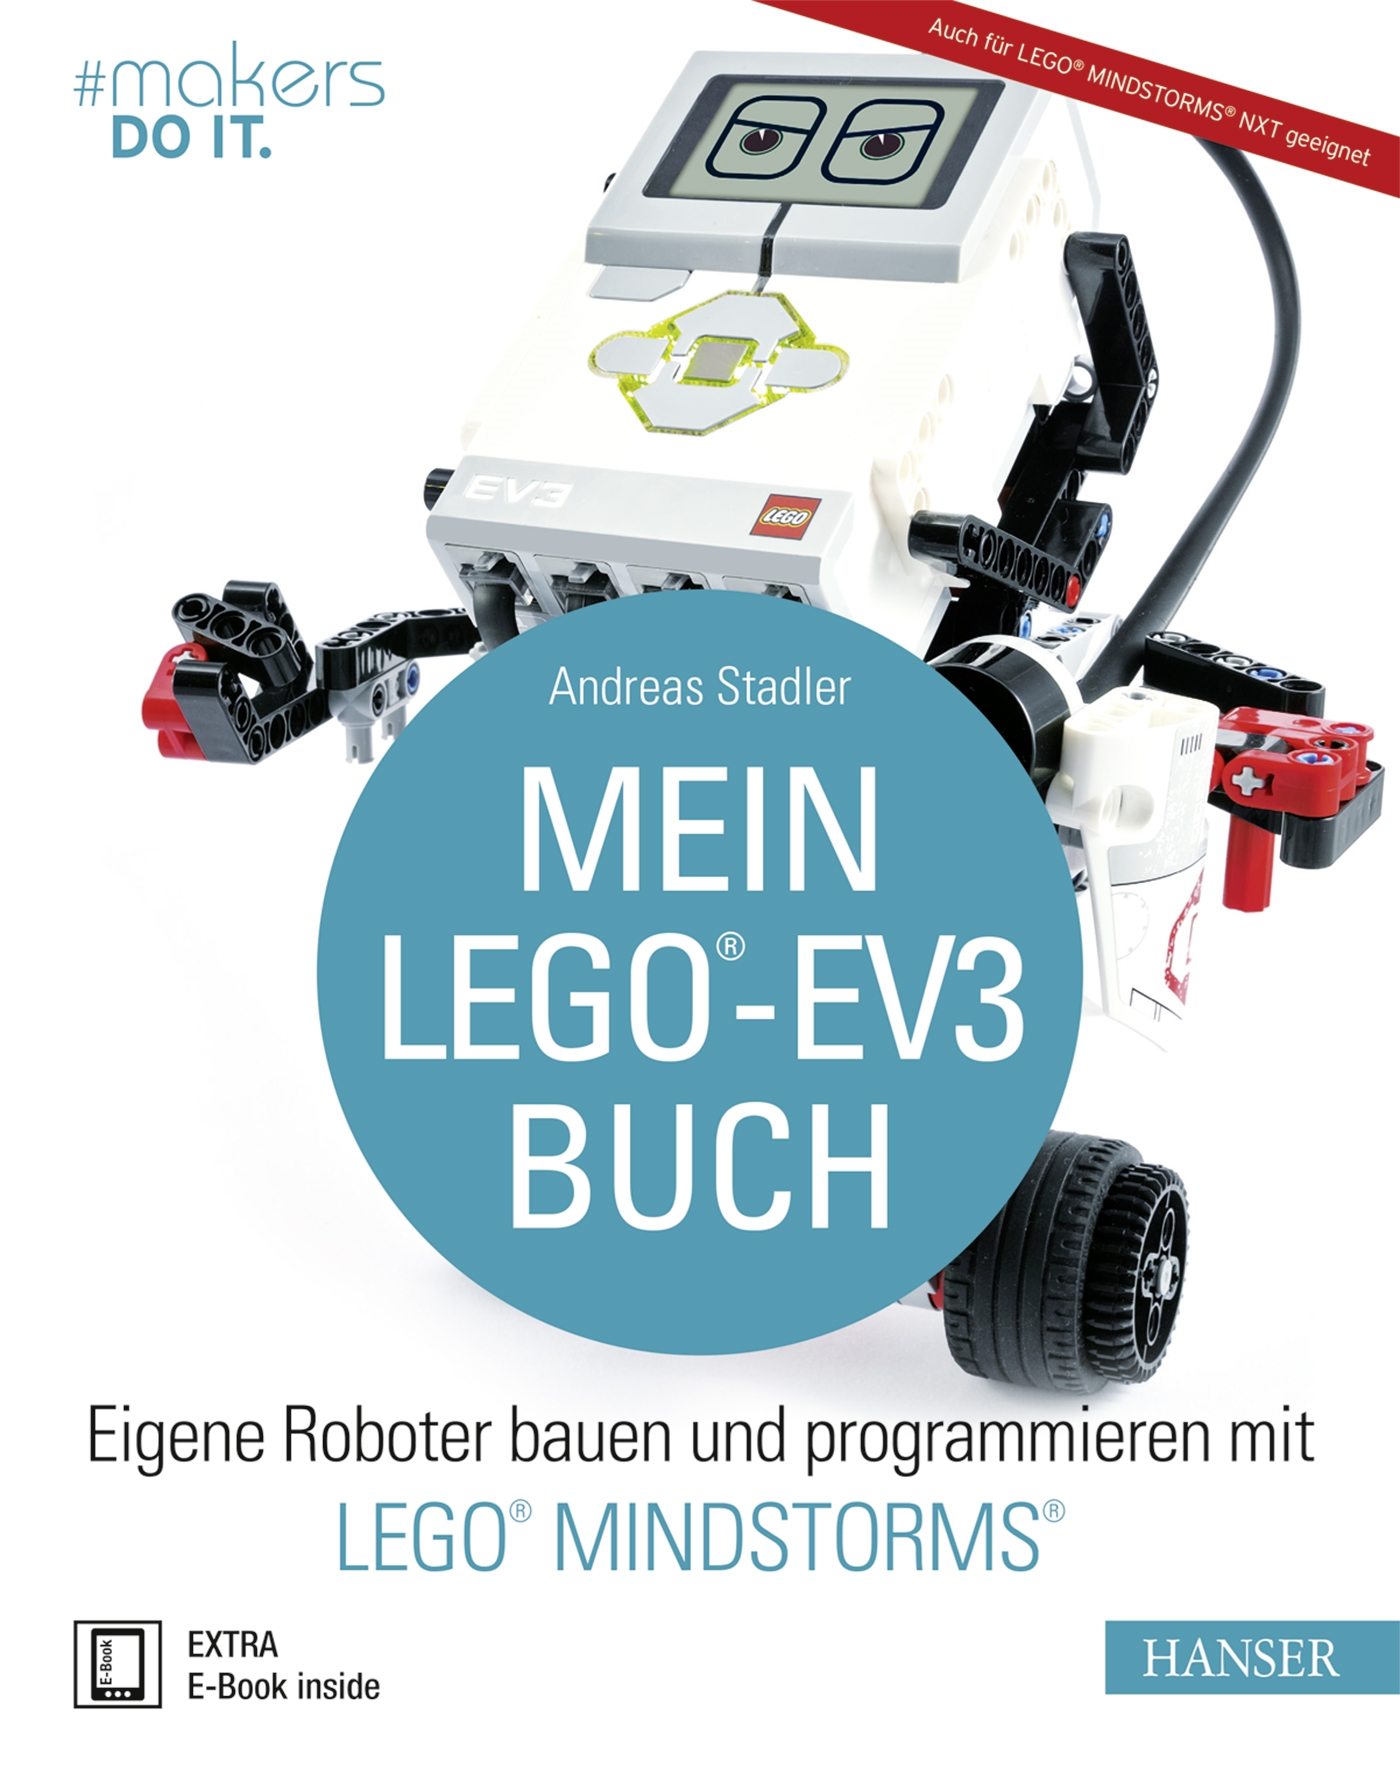 Mein LEGO®-EV3-Buch Andreas Stadler - Bild 1 von 1